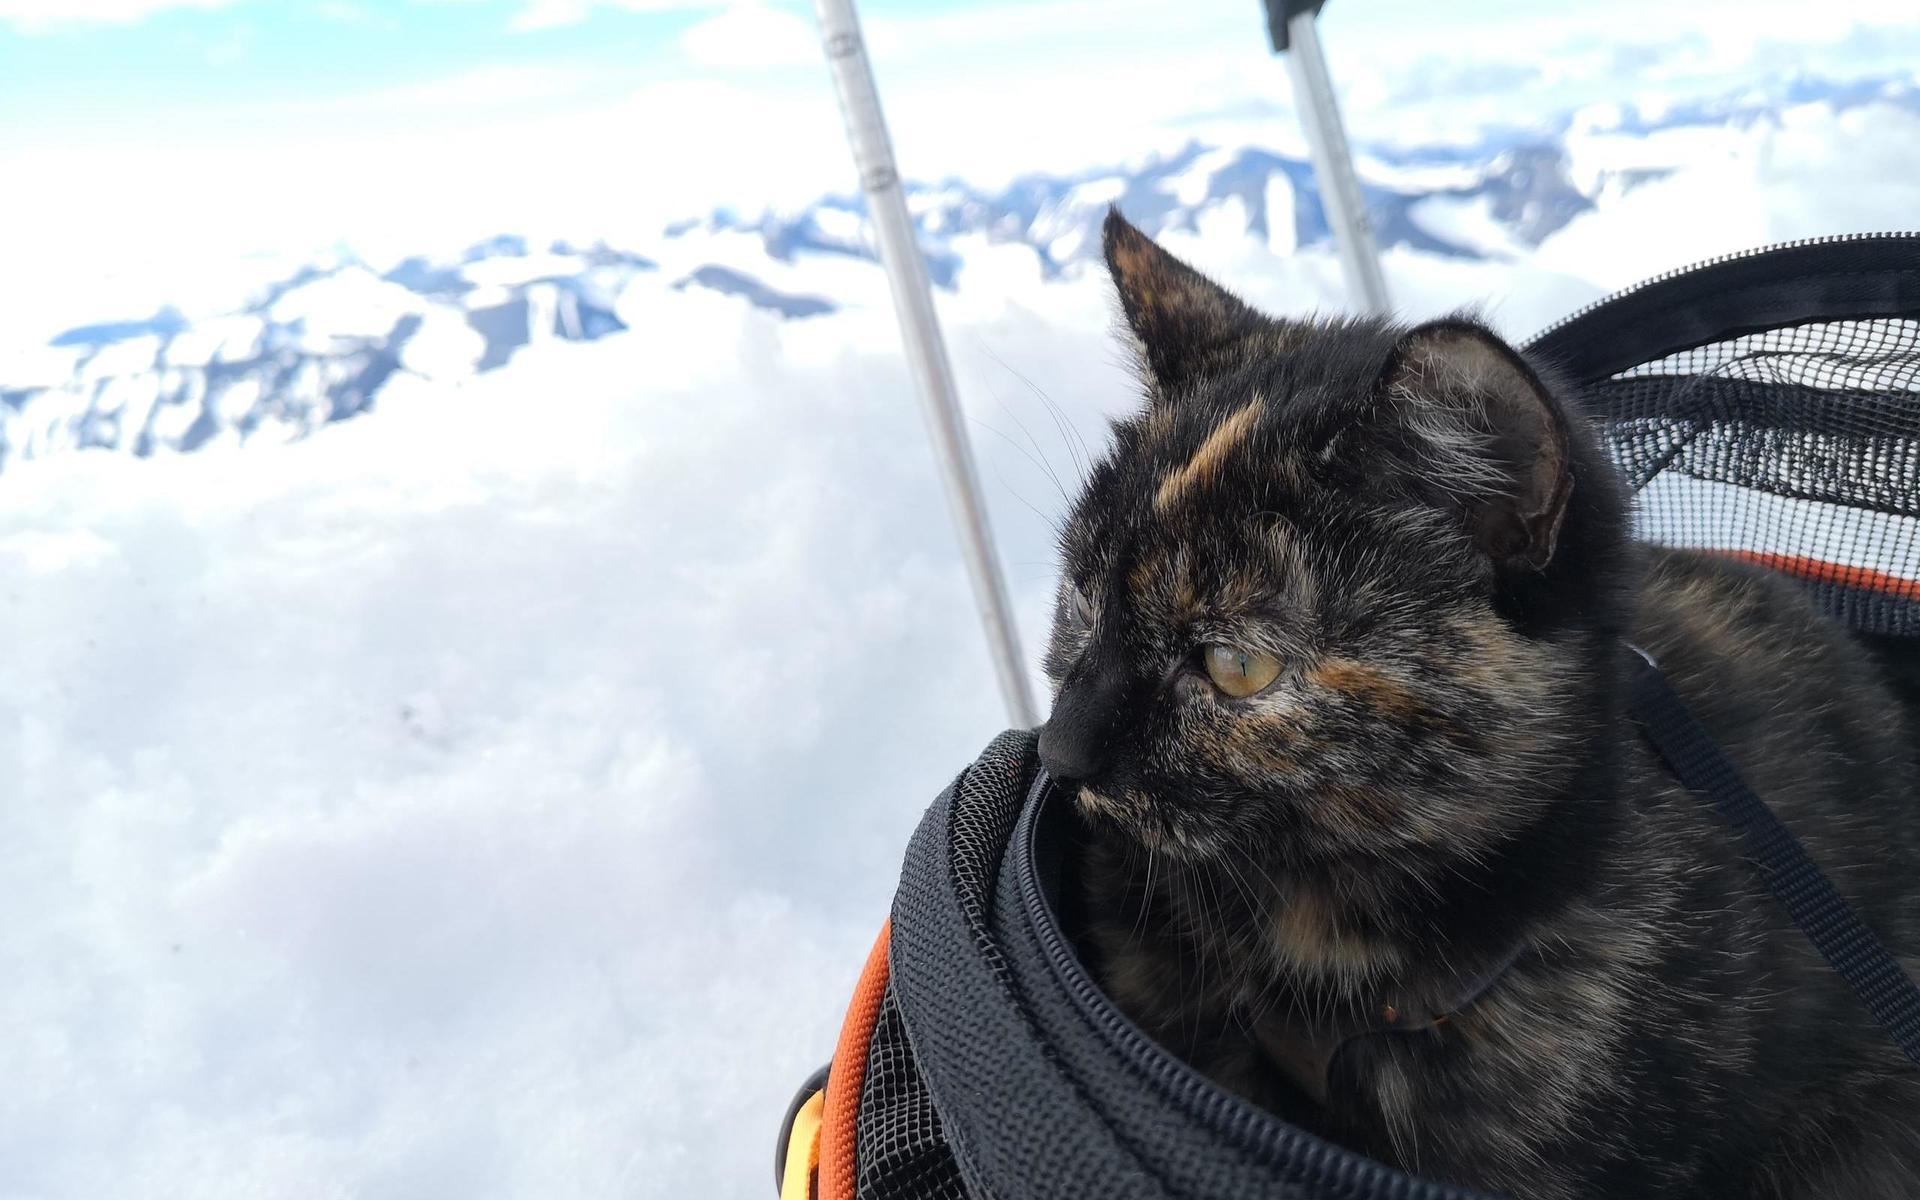 Mycket mat, vatten och kärlek är Sanna Widells tips för den som vill bestiga berg med sin katt.